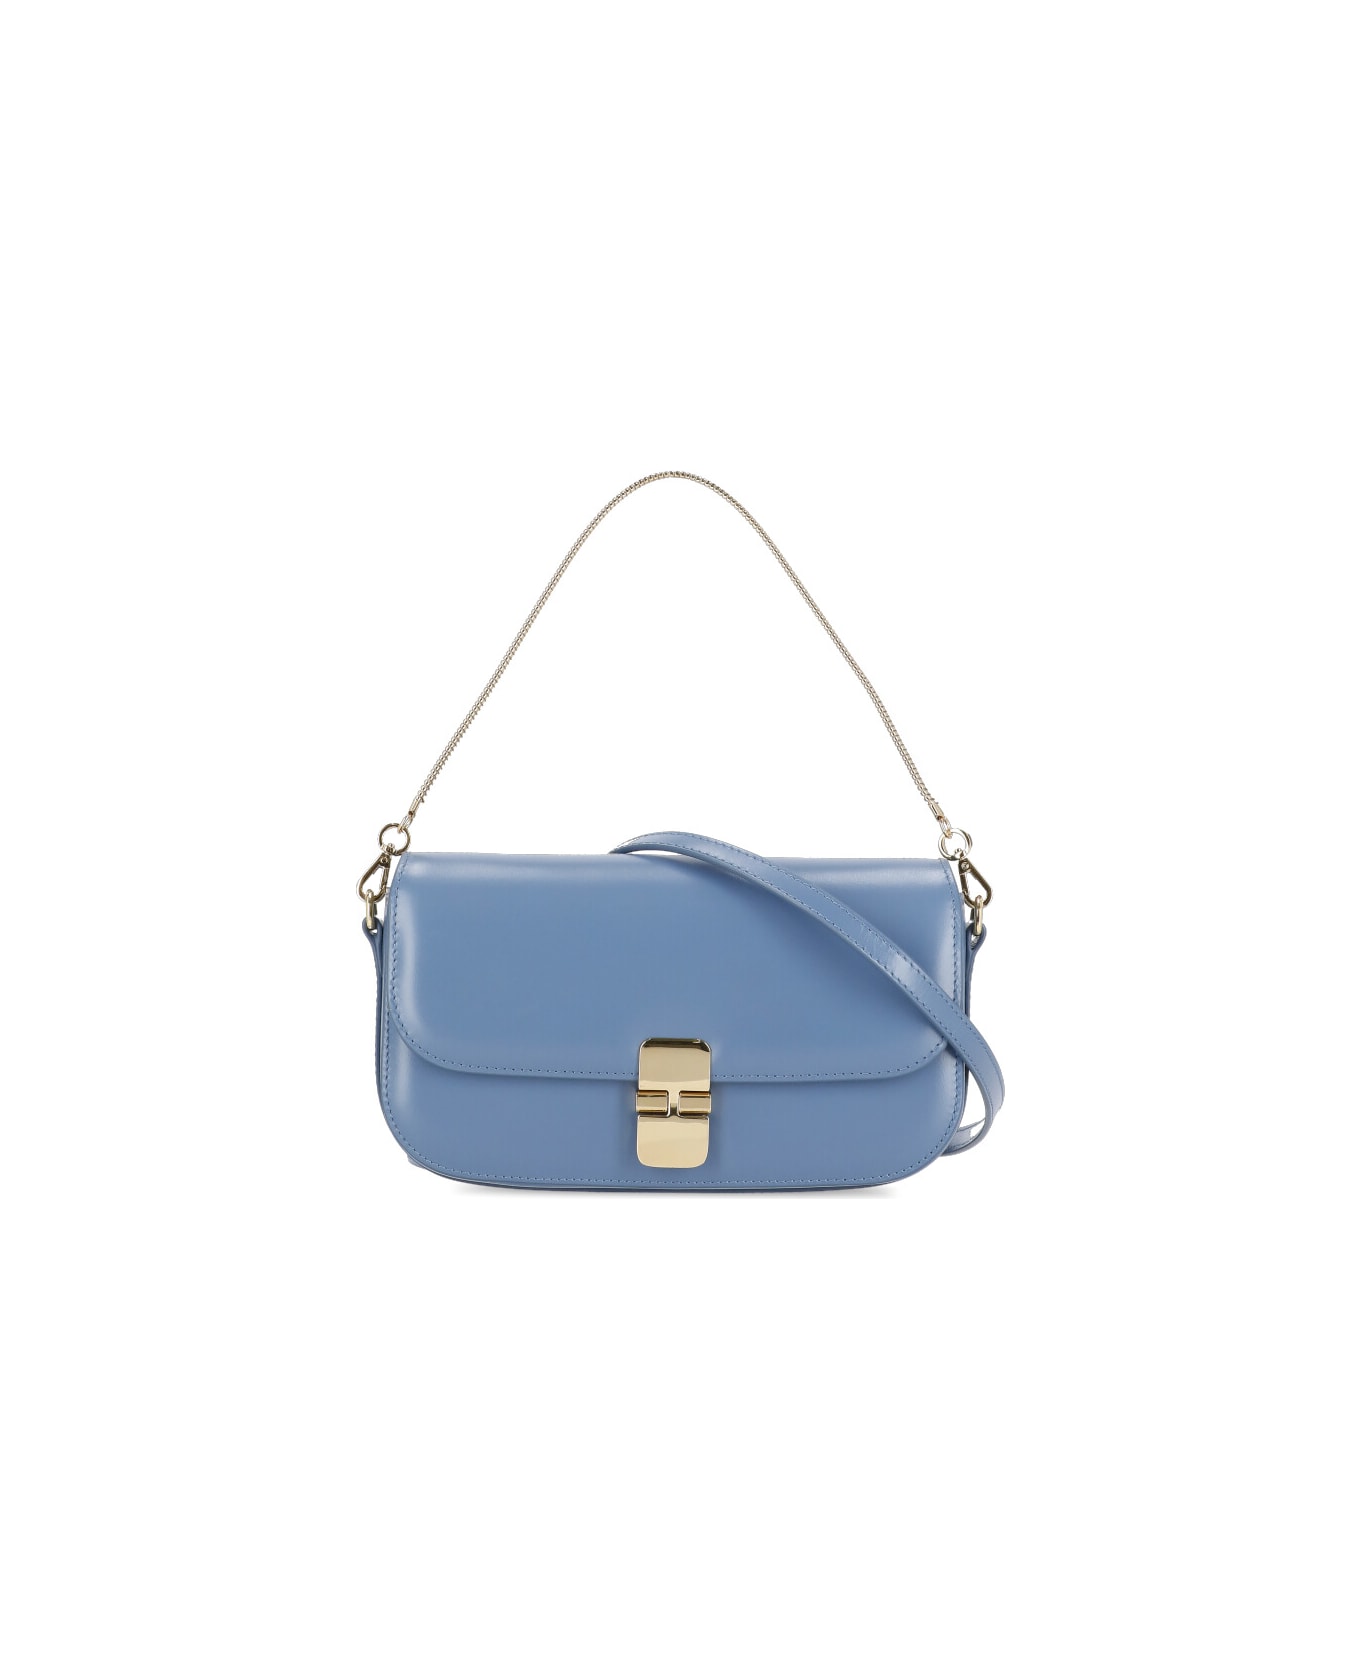 A.P.C. Grace Leather Clutch Bag - Light Blue